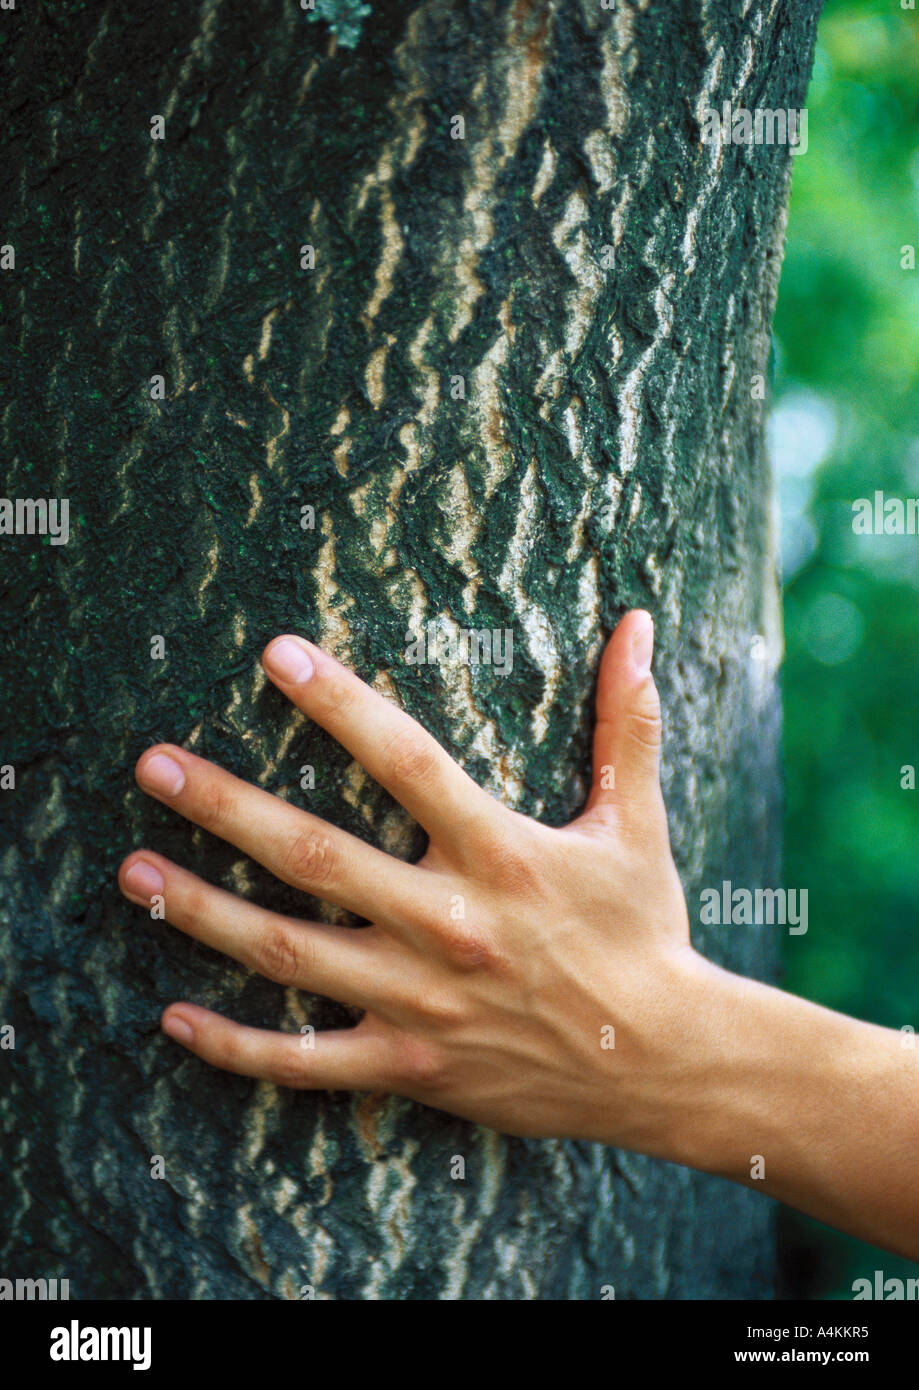 Toucher la main tree trunk, close-up Banque D'Images